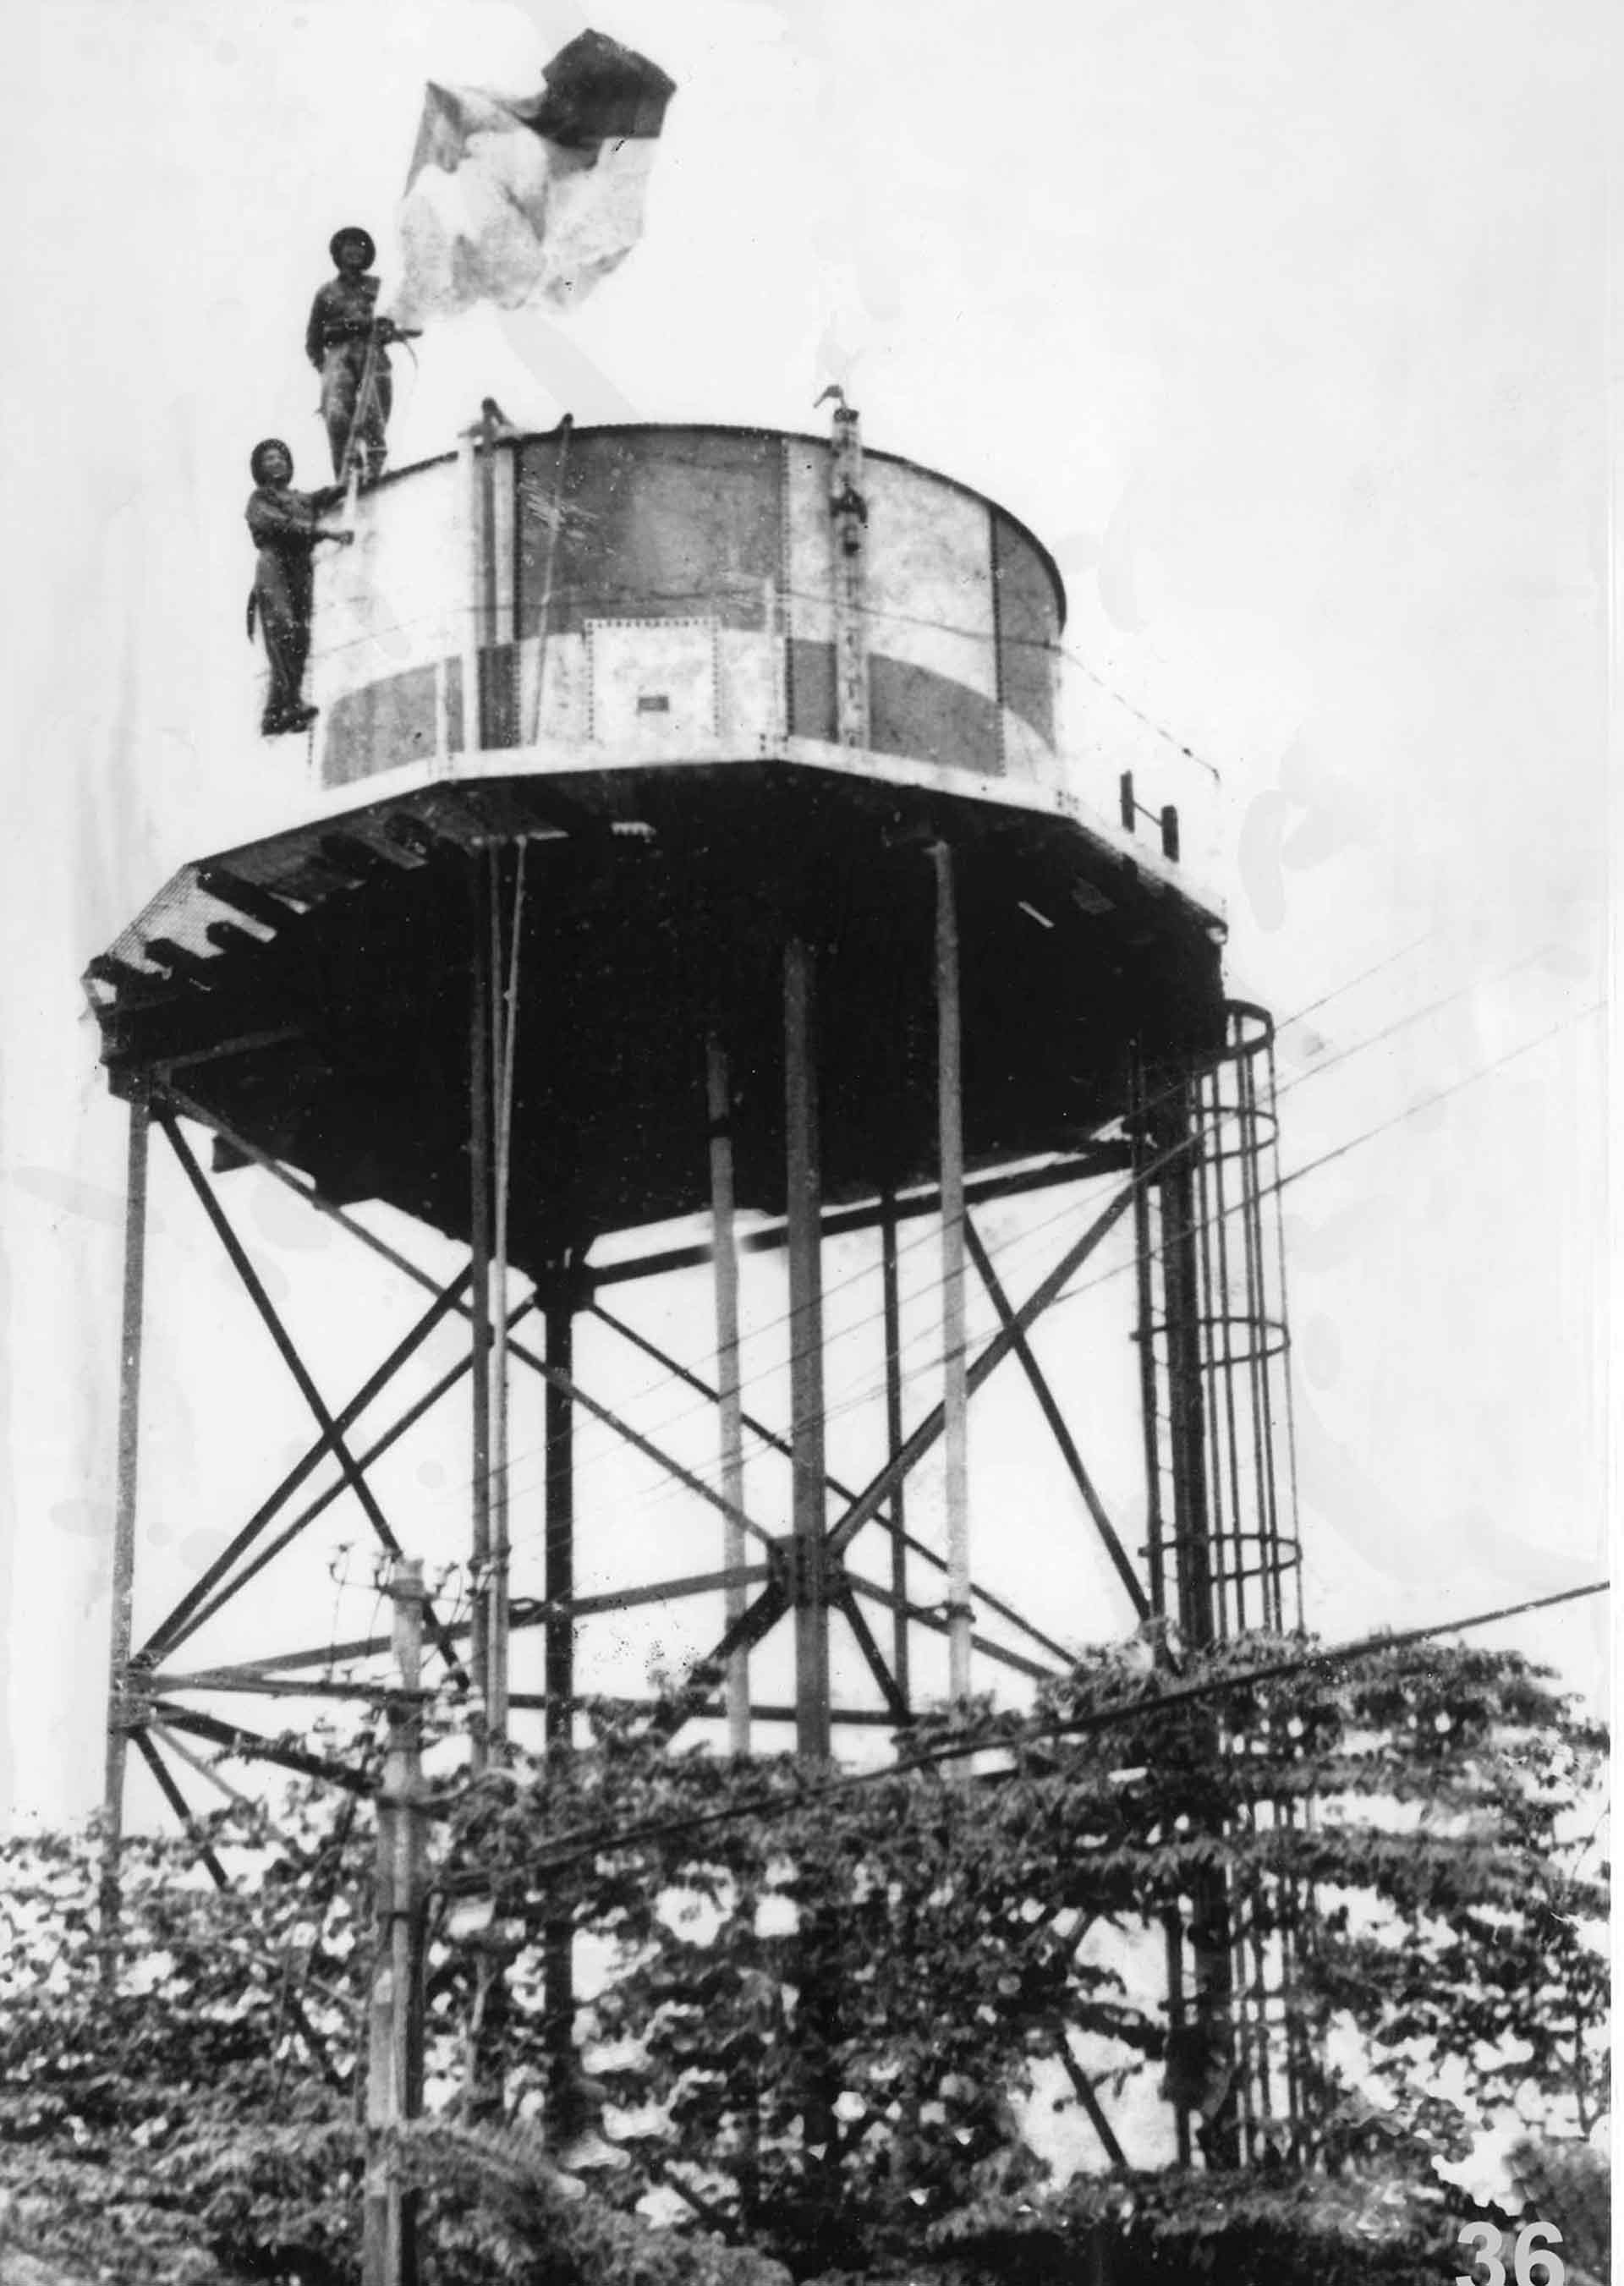 Tháp nước ở Trại Davis, nơi hai chiến sĩ Phạm Văn Lãi và Nguyễn Văn Cẩn cắm lá cờ của Mặt trận Dân tộc giải phóng miền Nam lúc 9h30 sáng, ngày 30/04/1975.